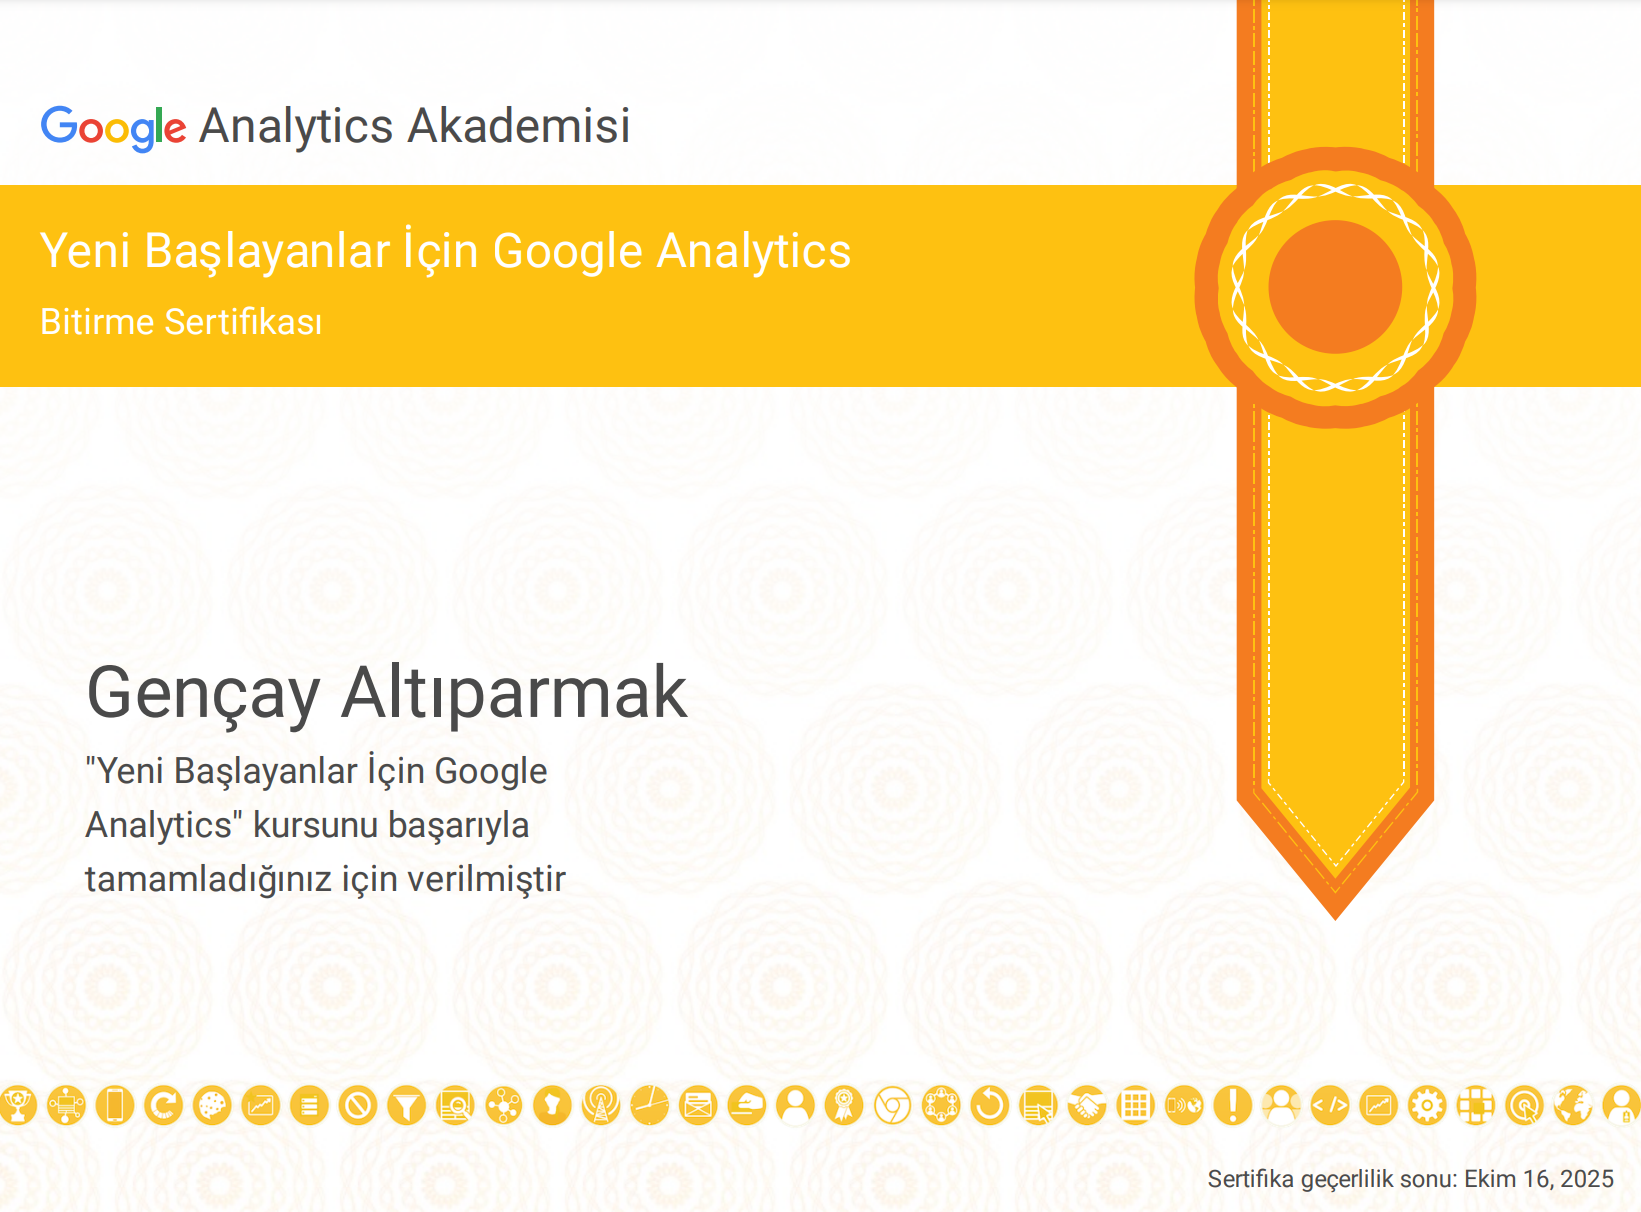 Yeni Başlayanlar İçin Google Analytics